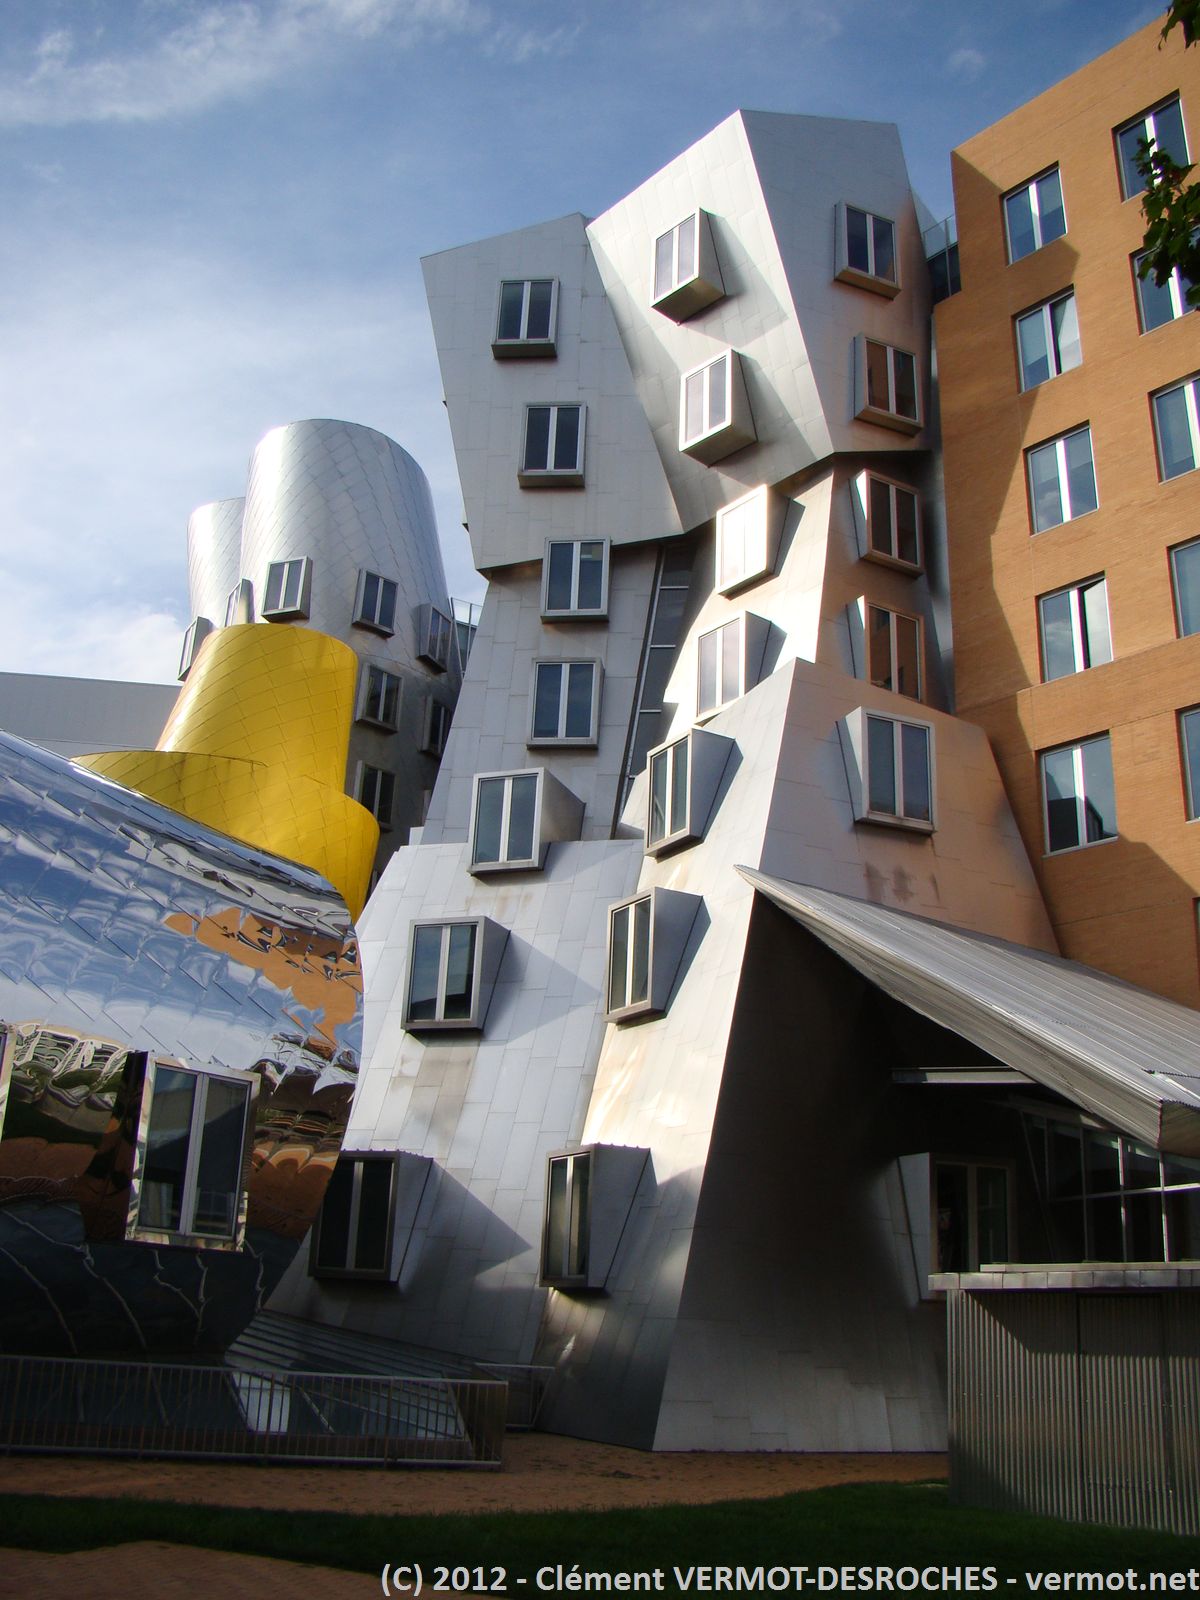 ... et le MIT évidemment (architecture de Frank Gehry)